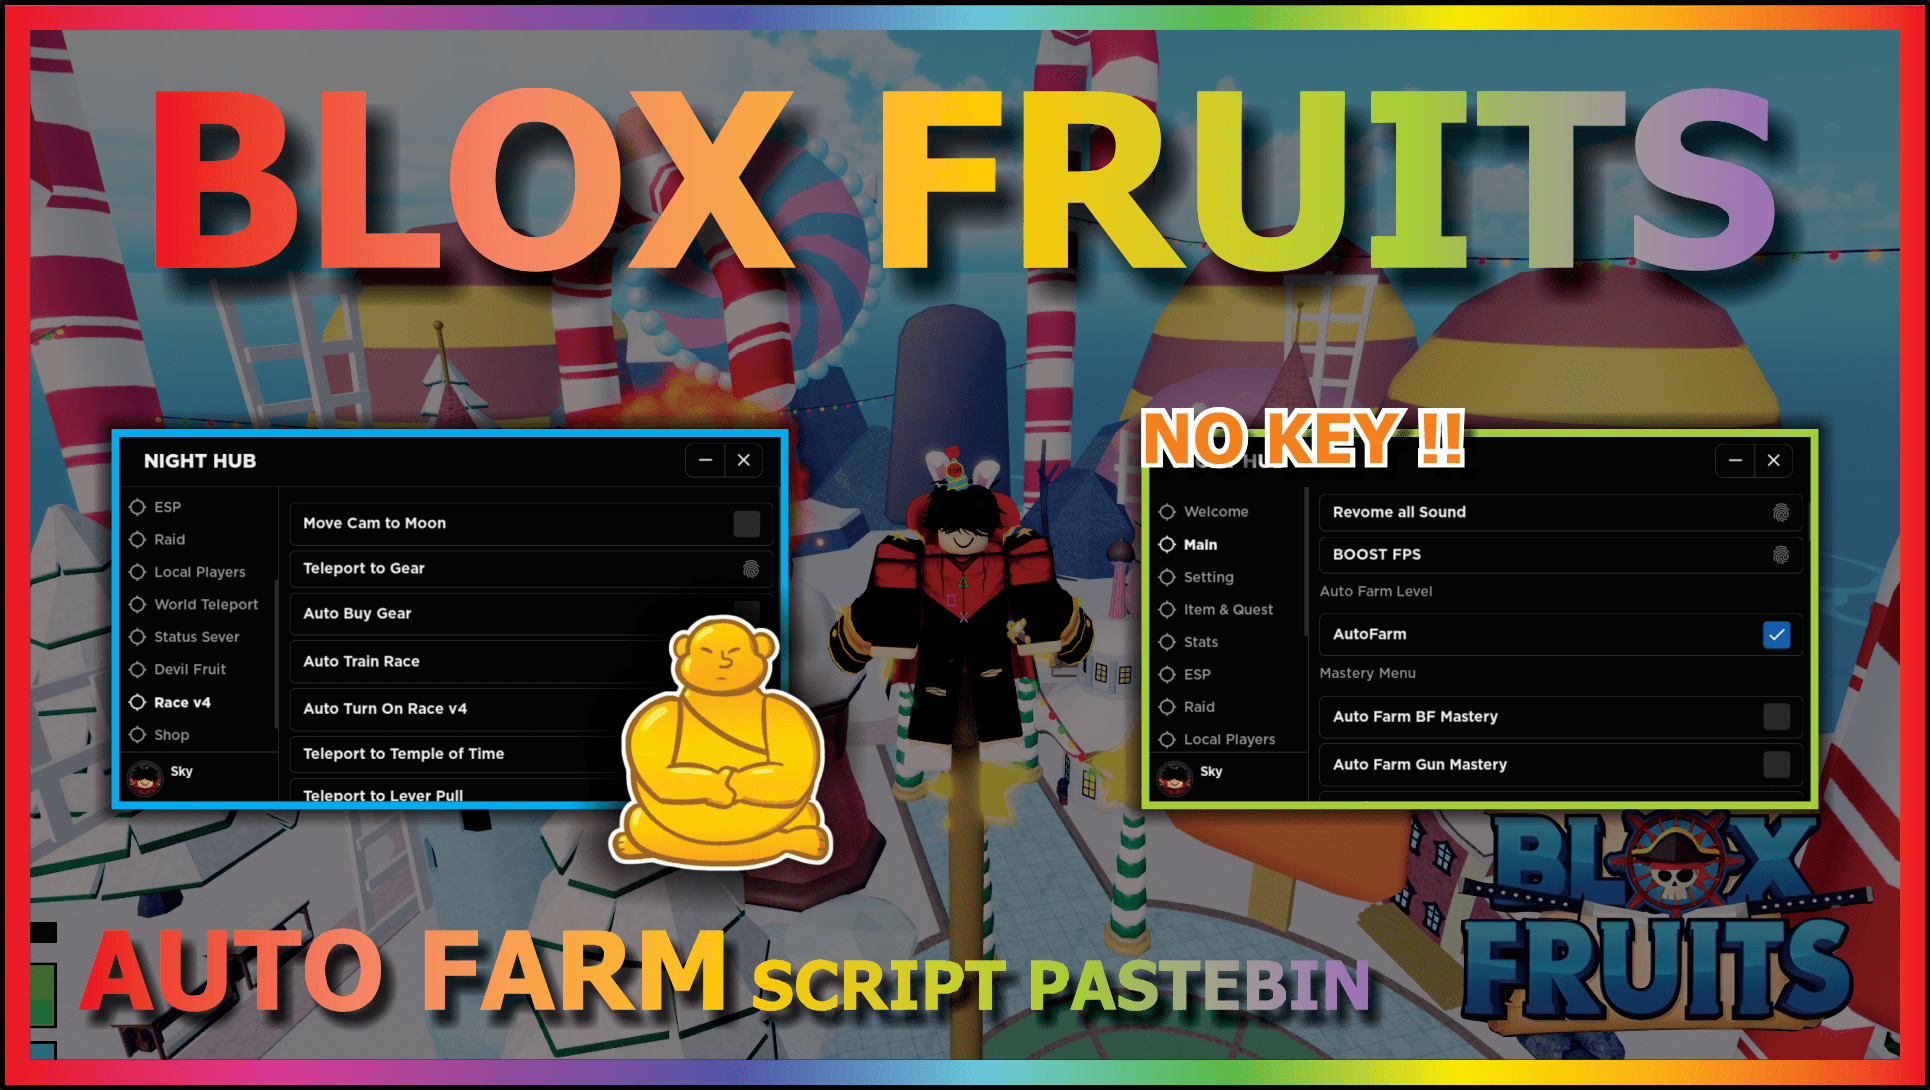 blox fruits script update 19 – ScriptPastebin